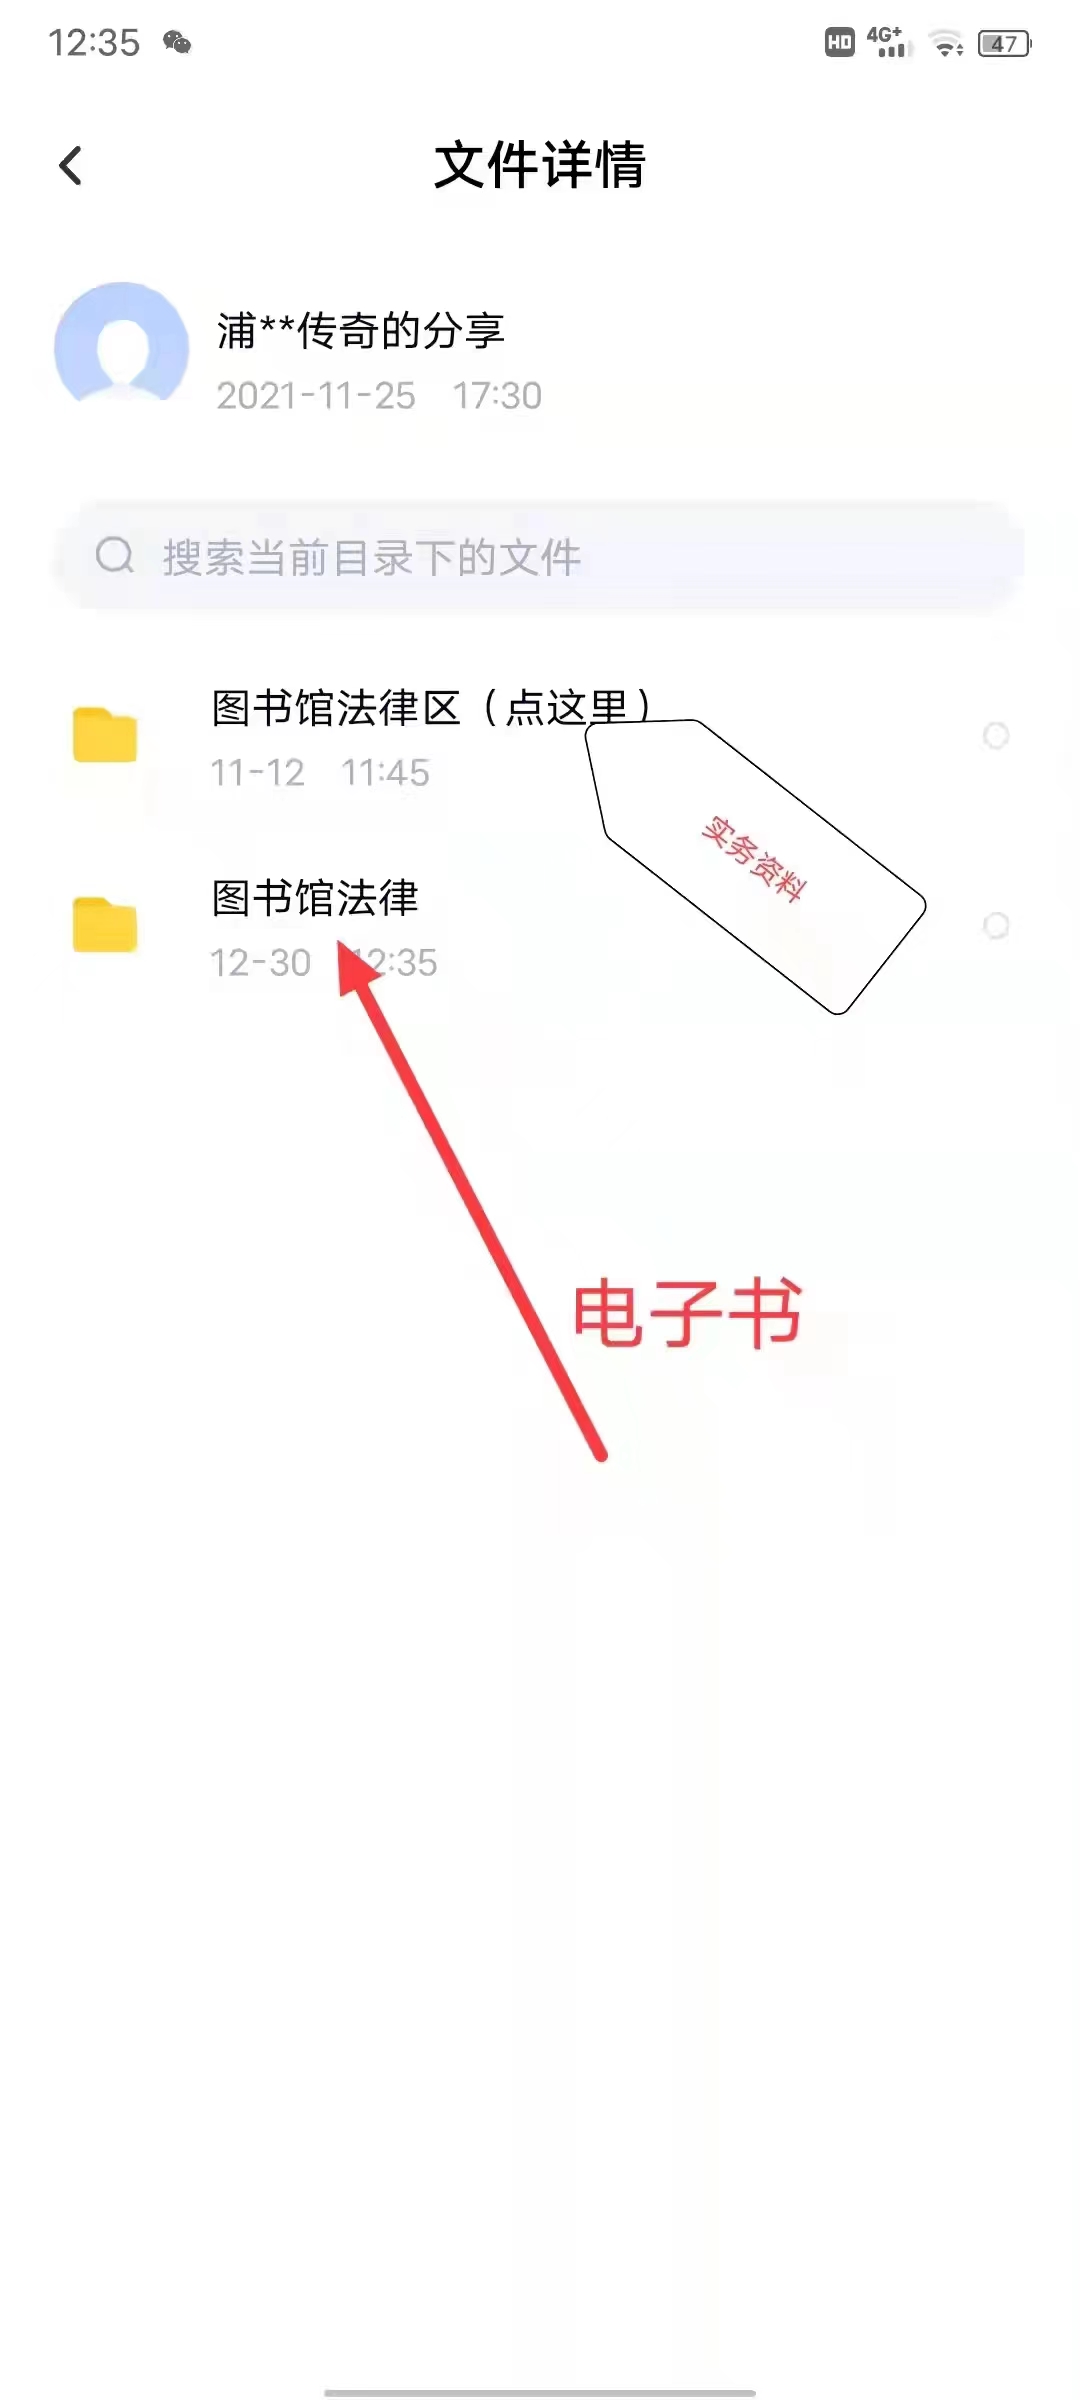 【法律】【PDF】127 最高人民法院第六巡回法庭裁判规则 202211 杨临萍